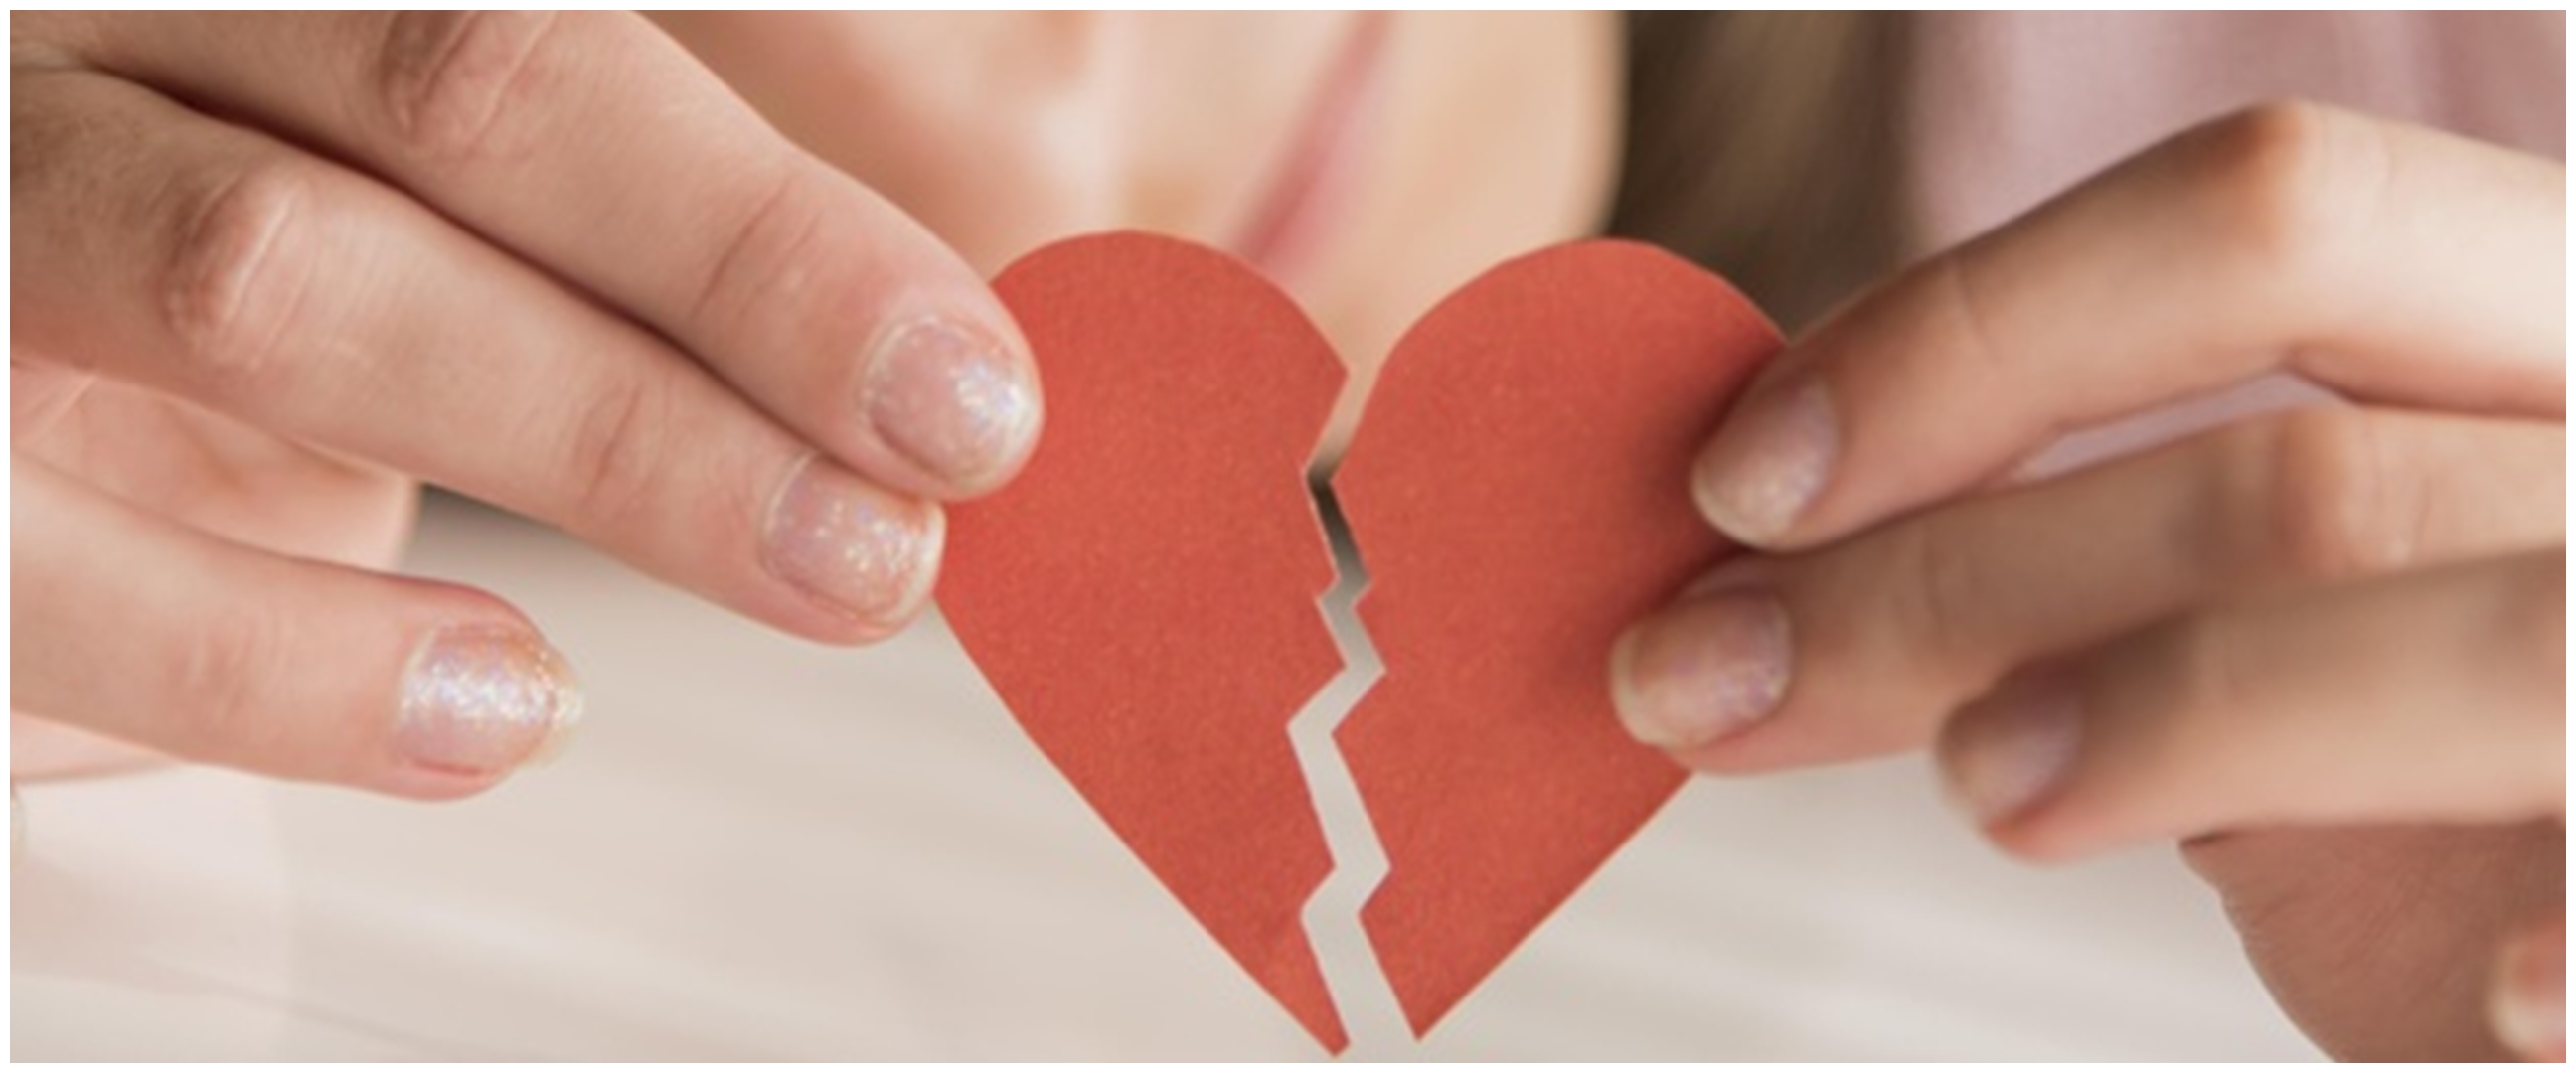 40 Kata-kata cinta tentang perubahan perasaan, bantu utarakan isi hati